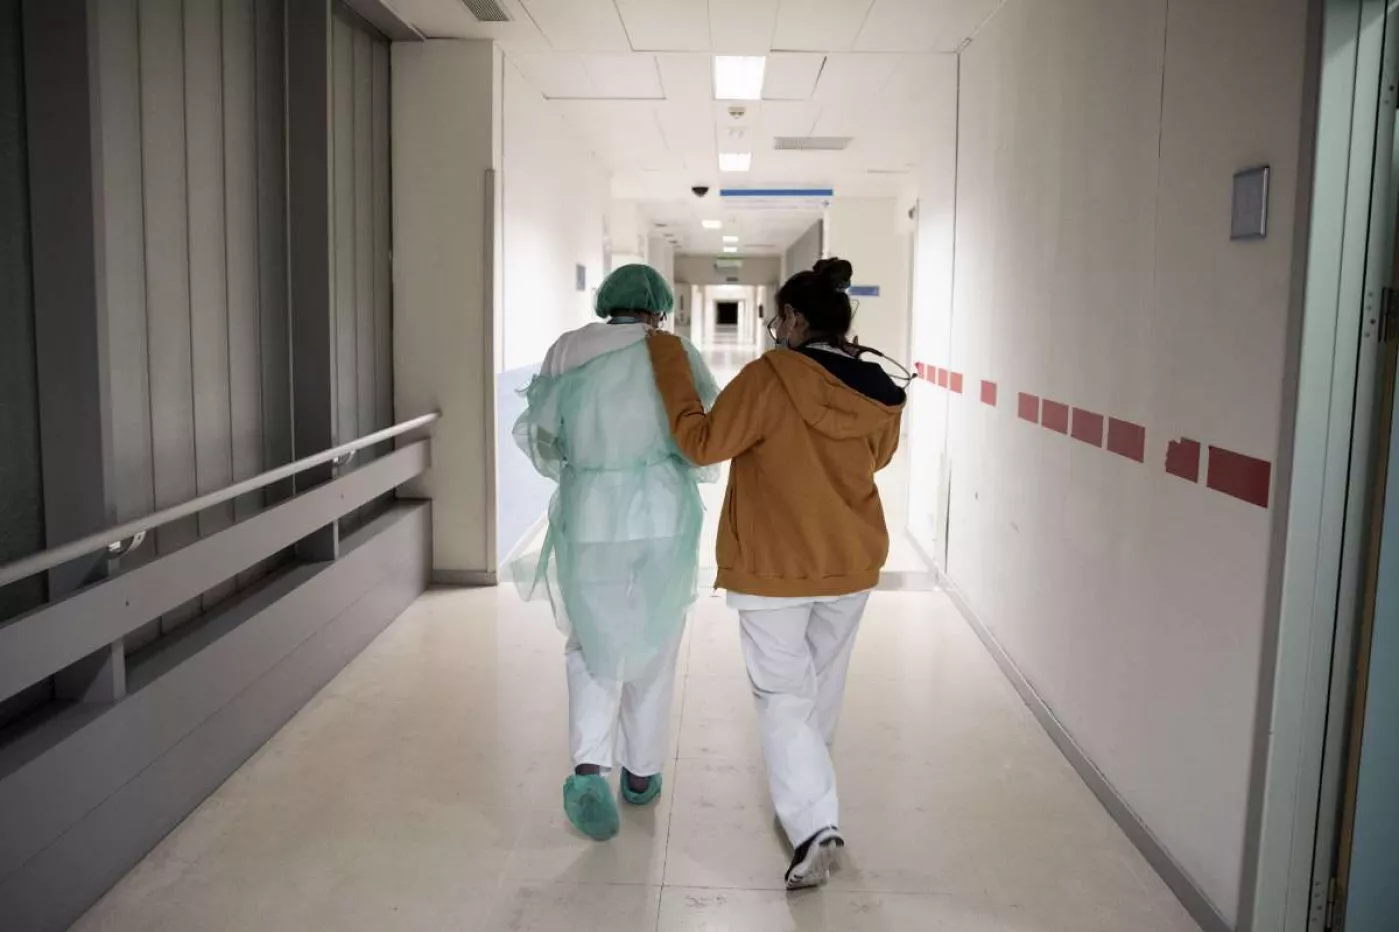 Los pasillos, por los que circulan pacientes y profesionales, no son espacios más libres de patógenos. 